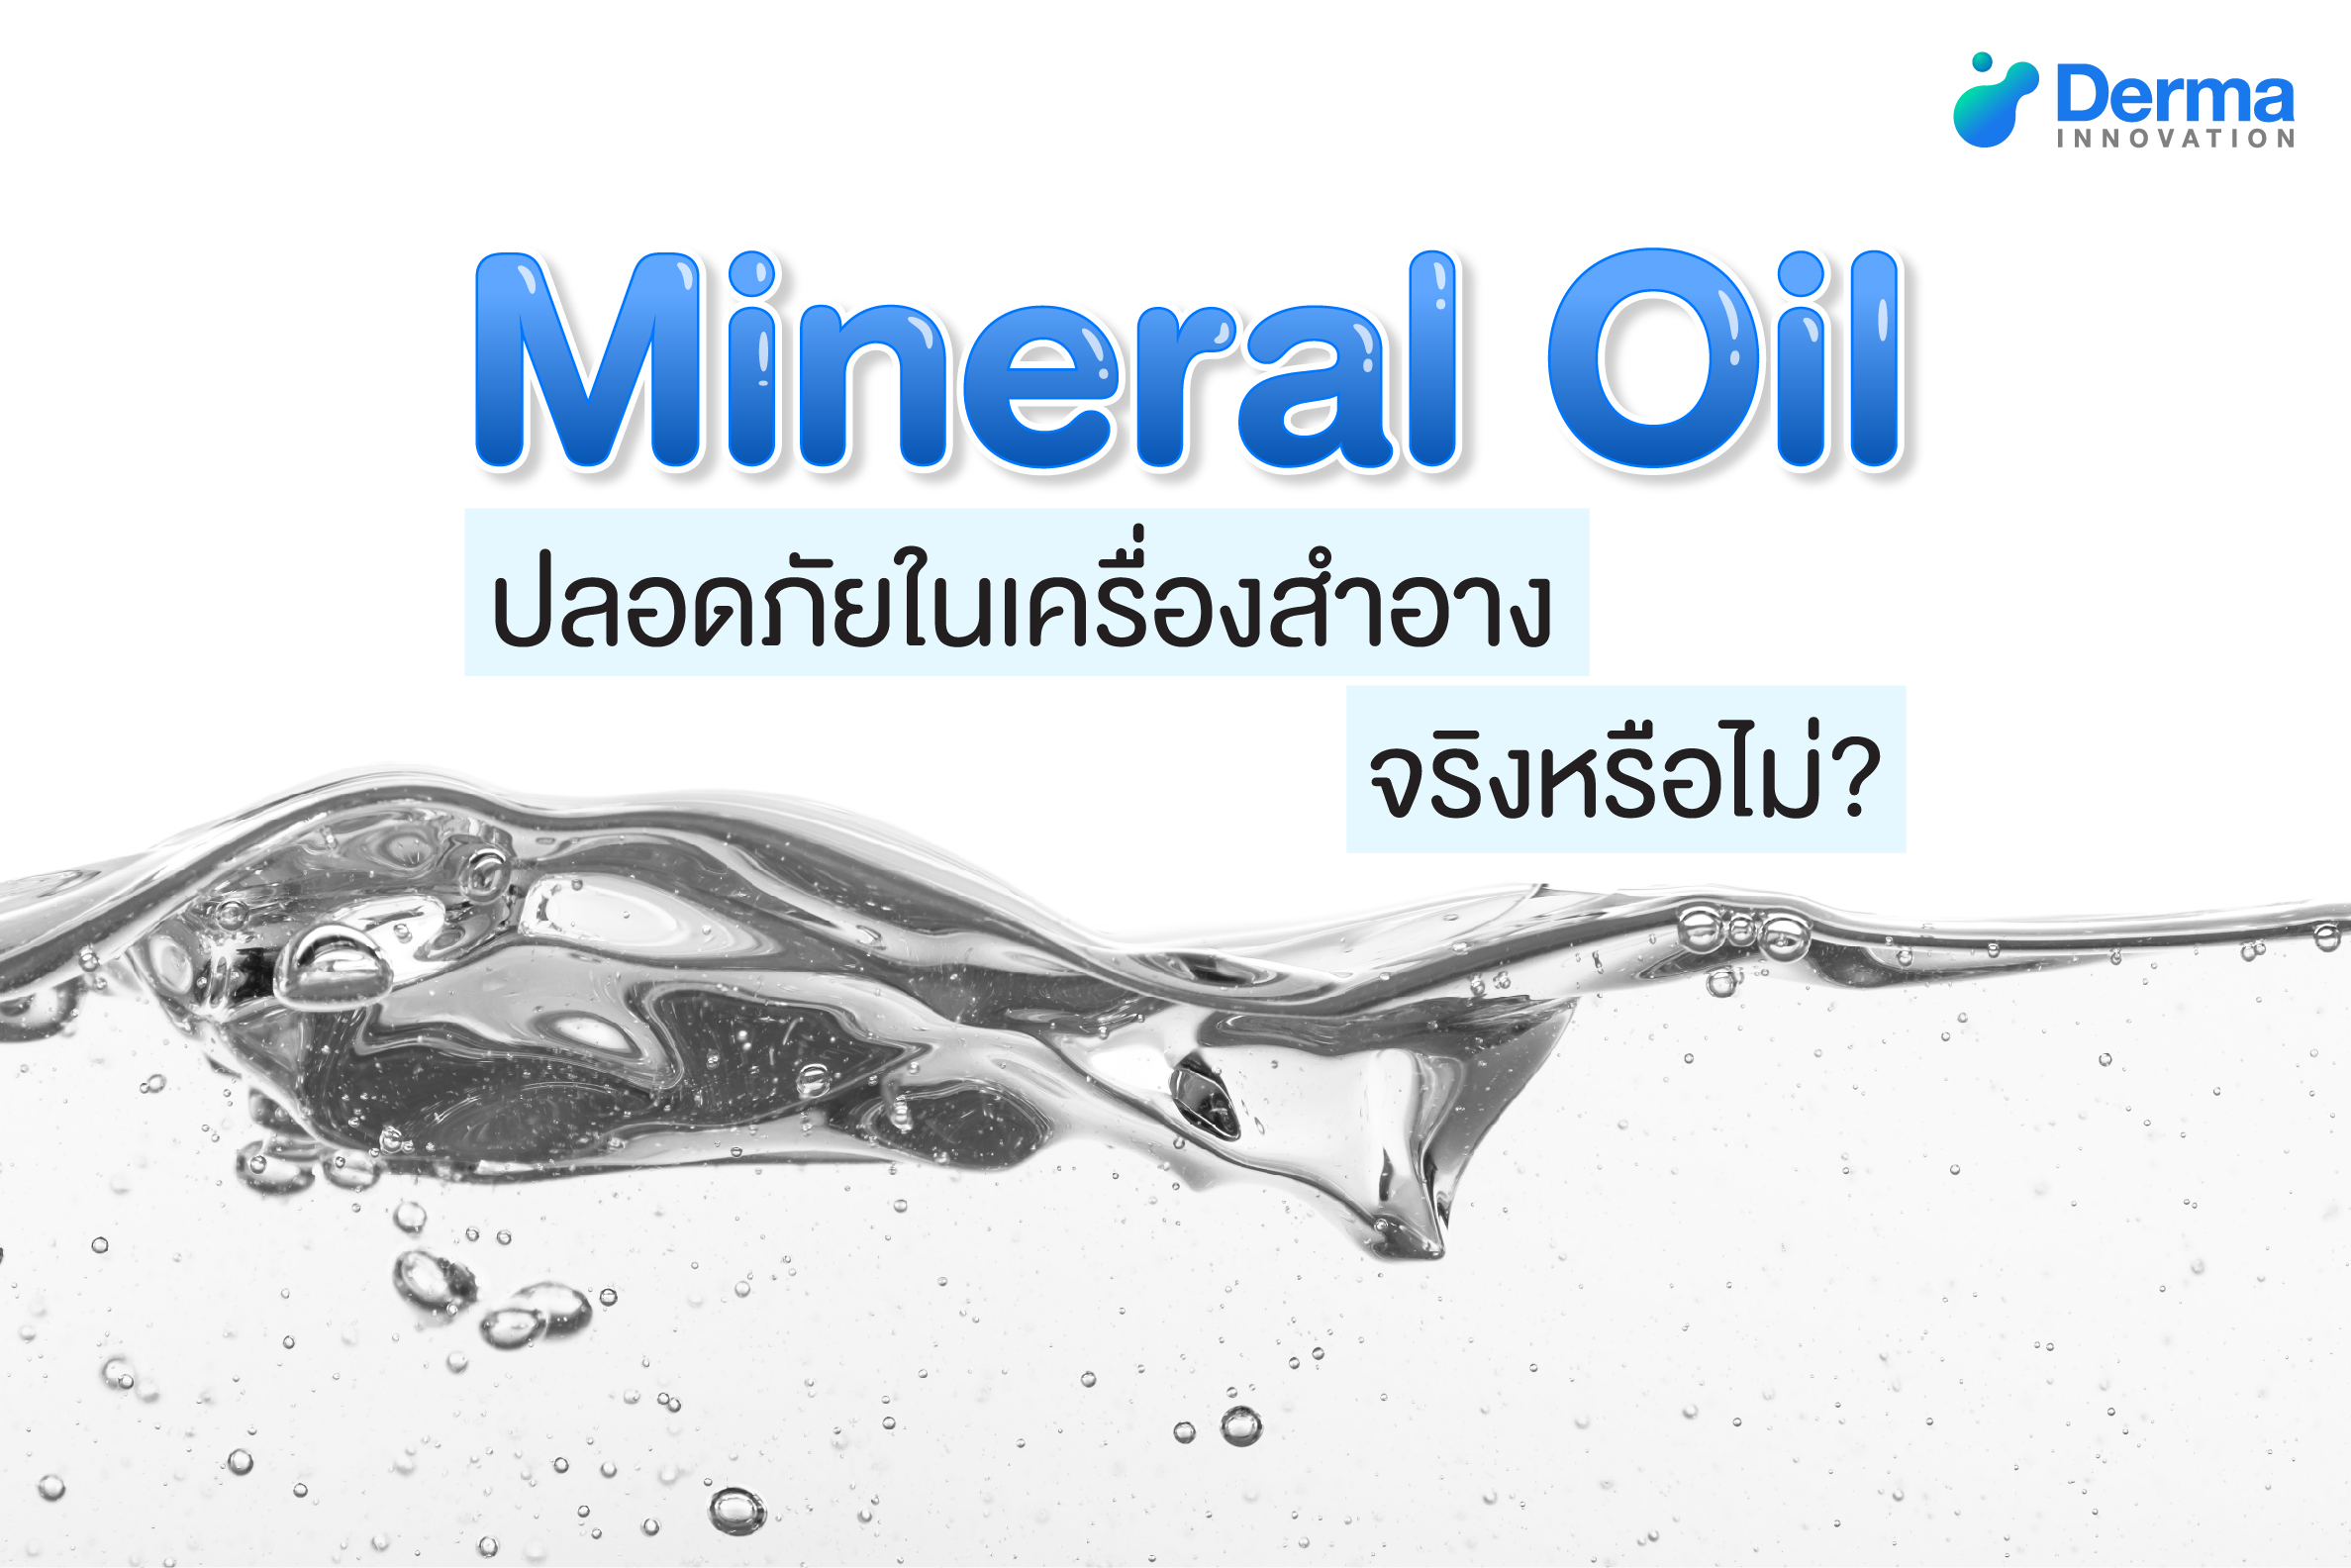 Mineral Oil ปลอดภัยในเครื่องสำอางจริงหรือไม่?